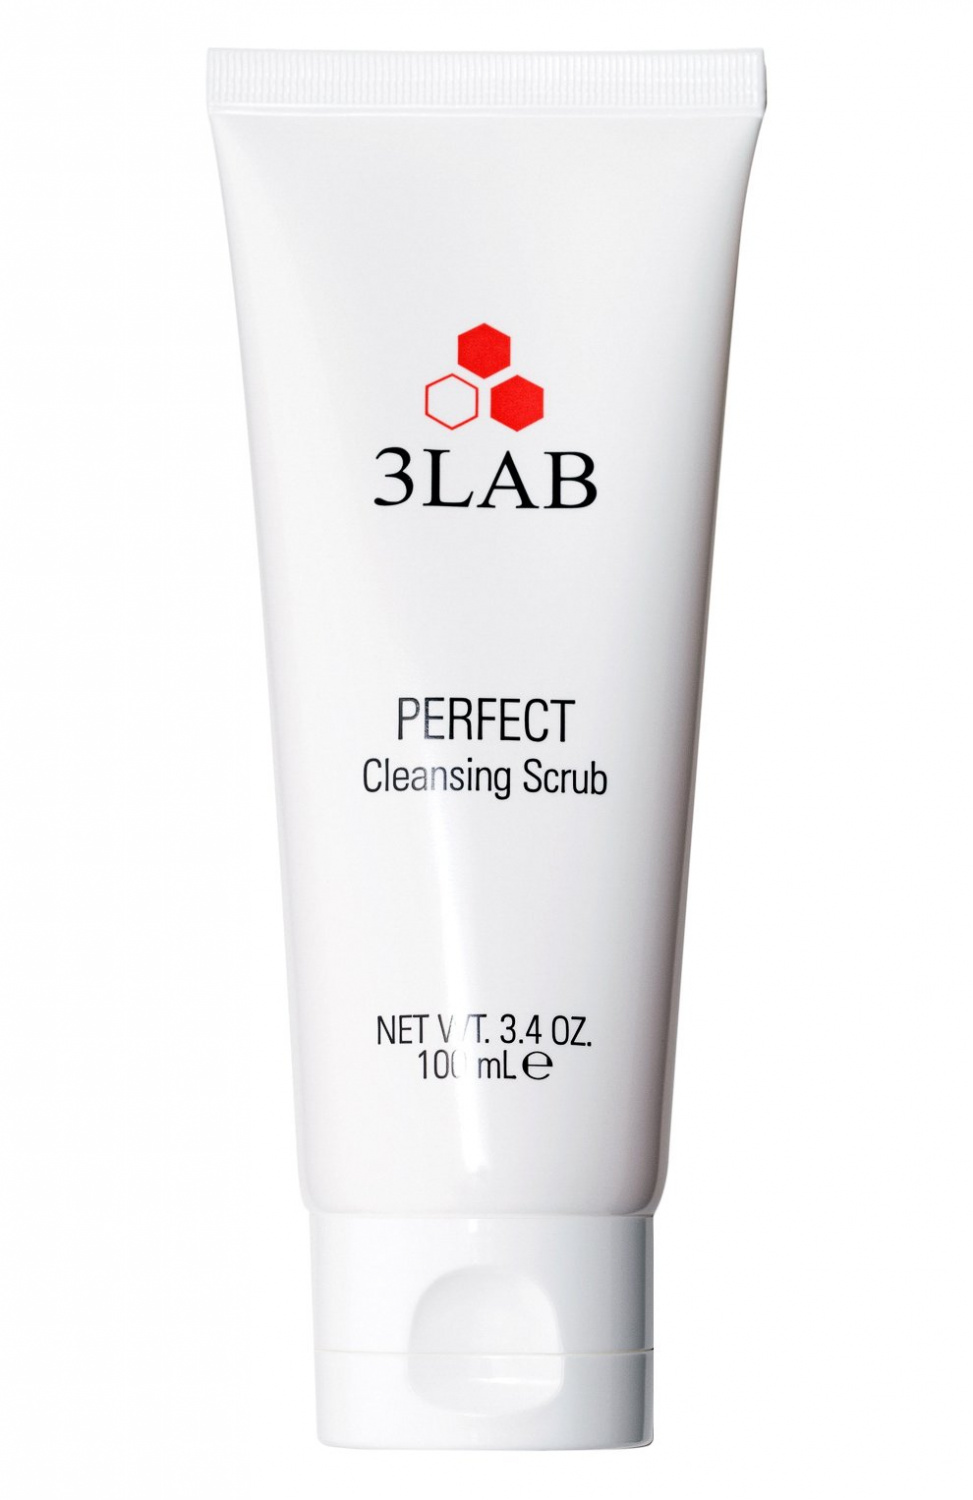 3LAB Perfect Cleansing Scrub 100ml - интернет-магазин профессиональной косметики Spadream, изображение 37292